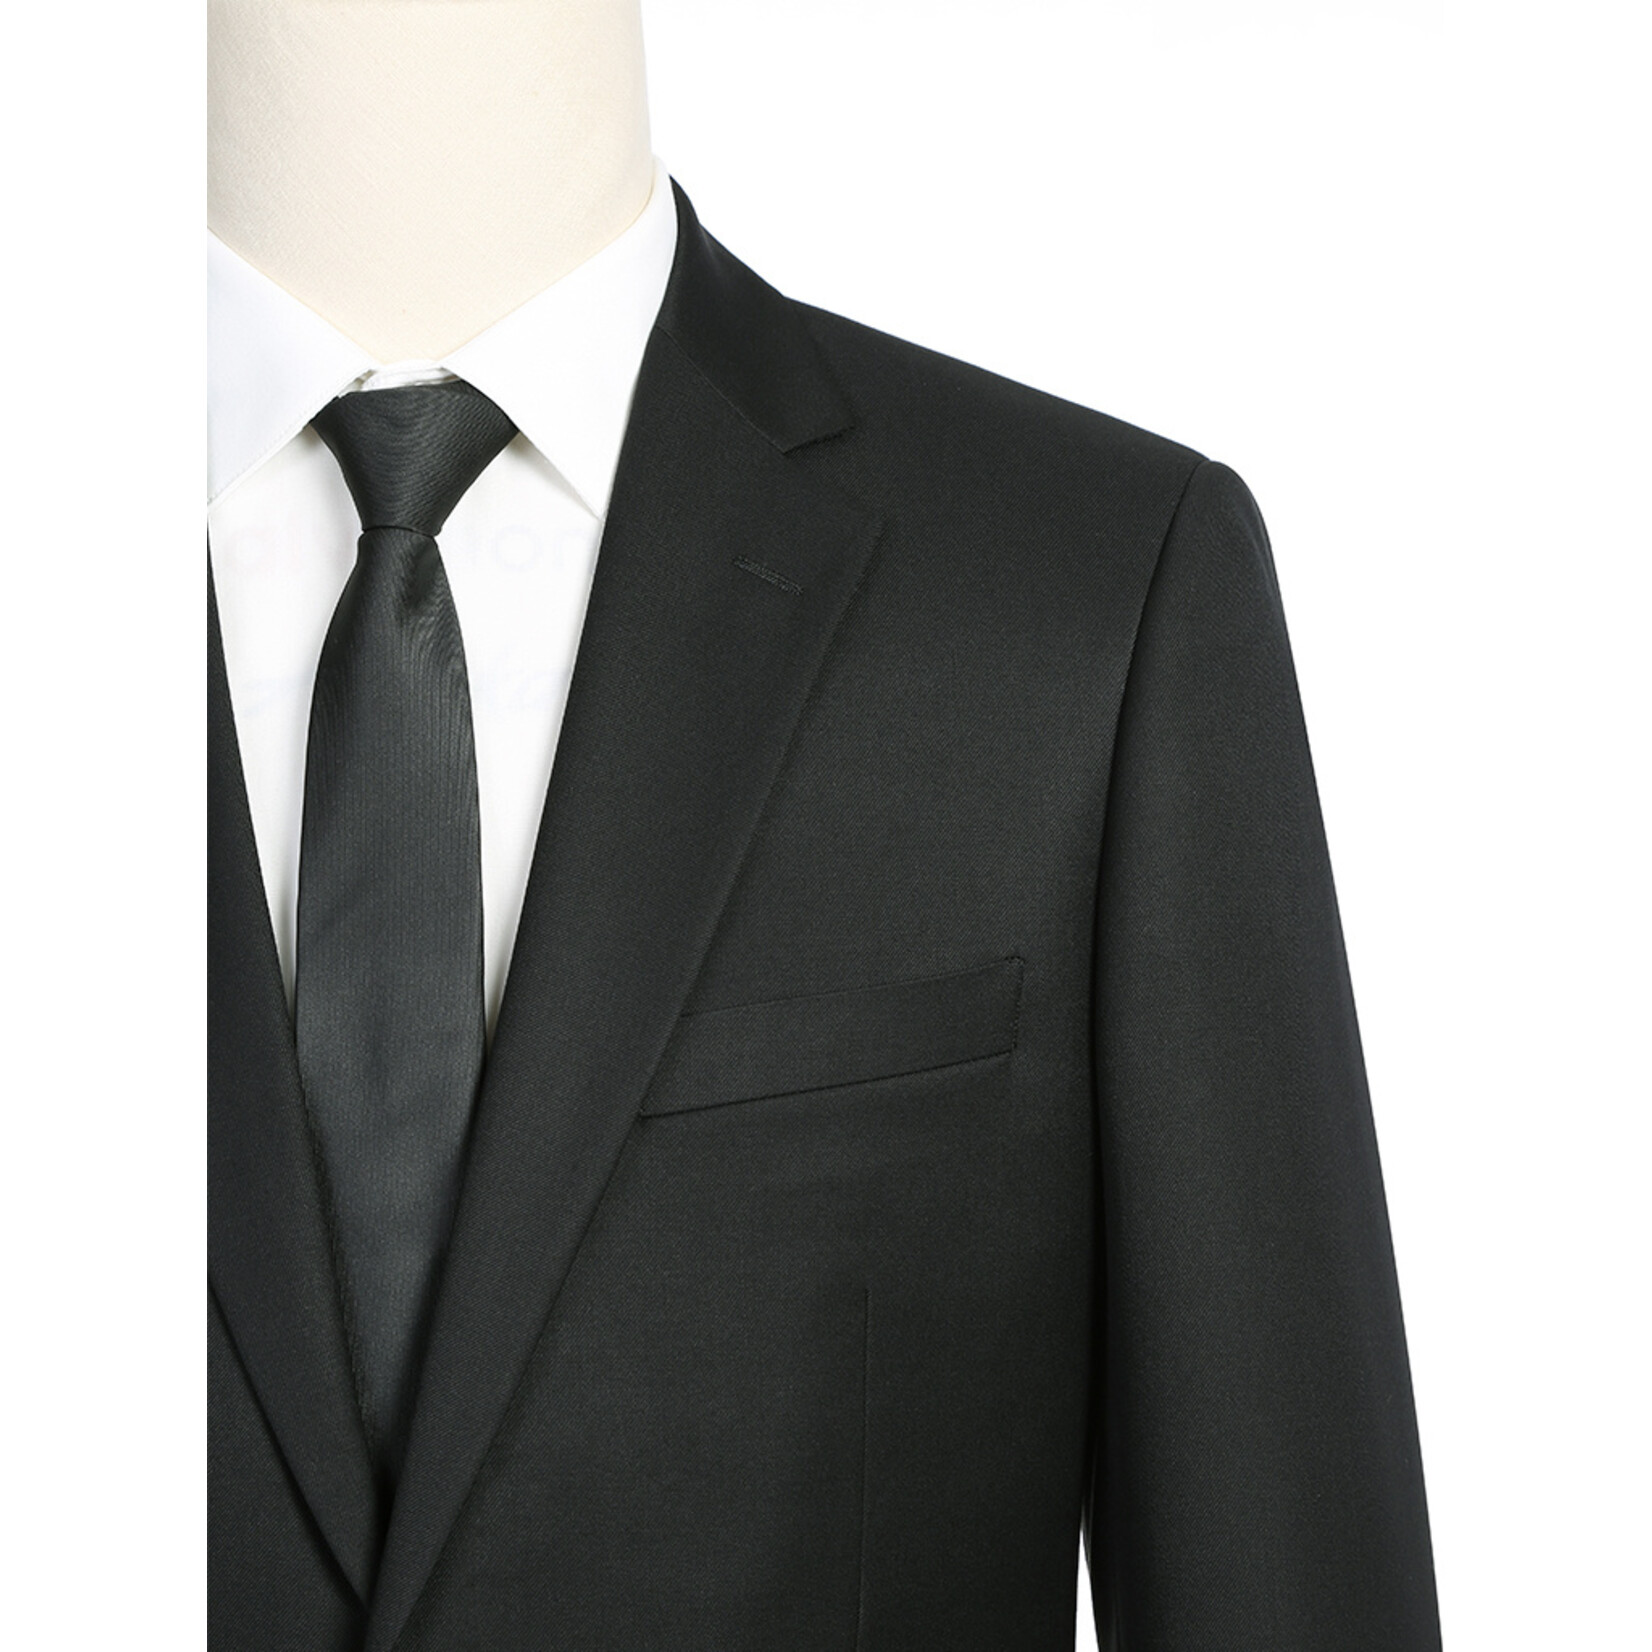 Renoir Renoir CLASSIC Fit Suit 201-1 Black